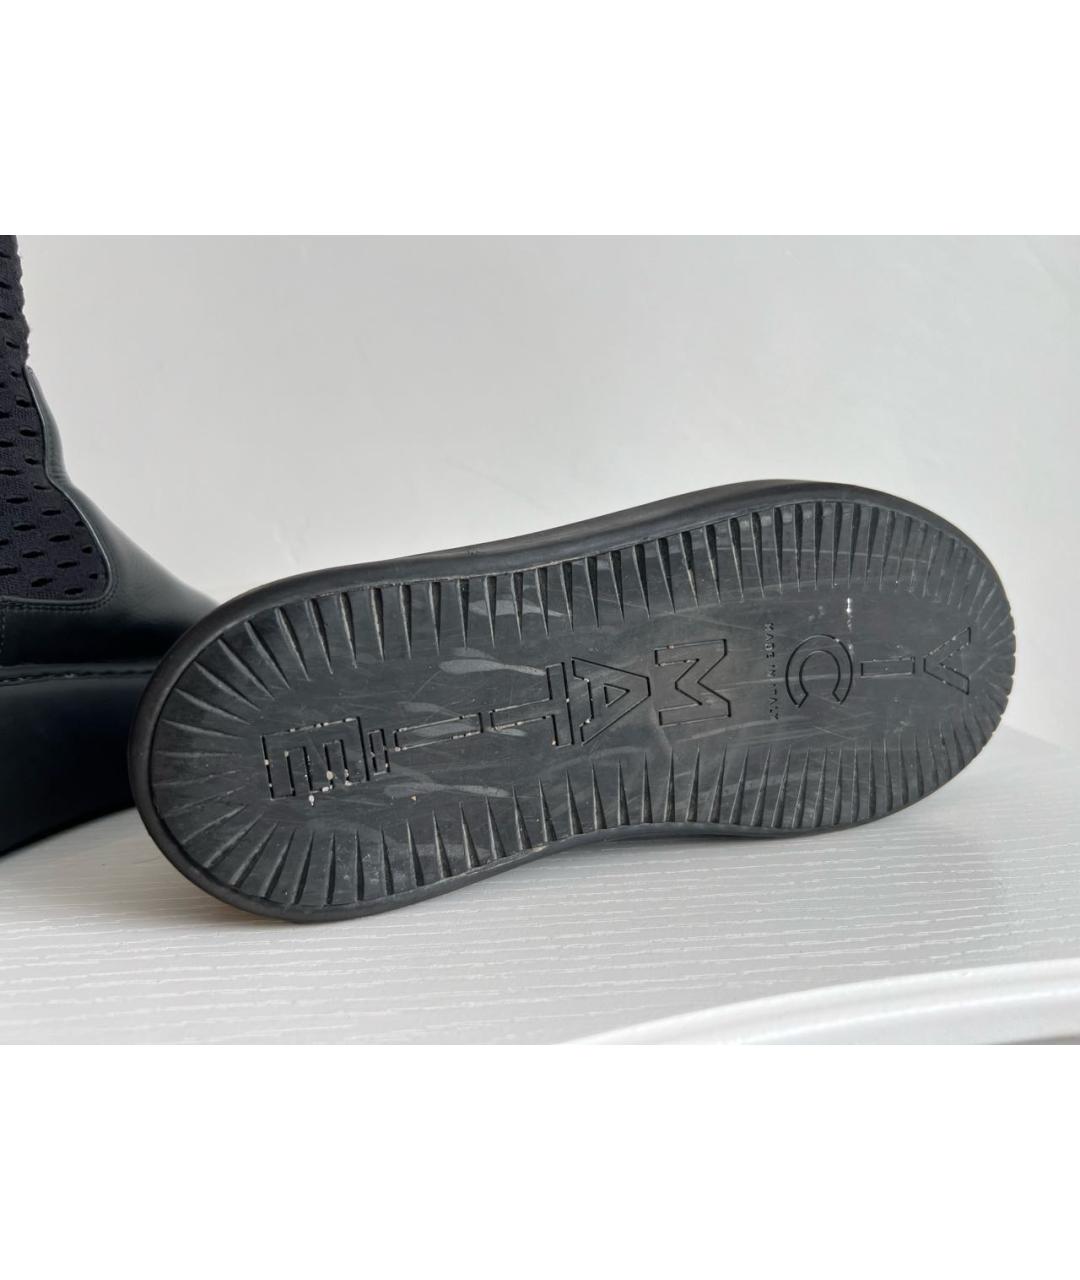 VIC MATIE Черные кожаные ботинки, фото 7